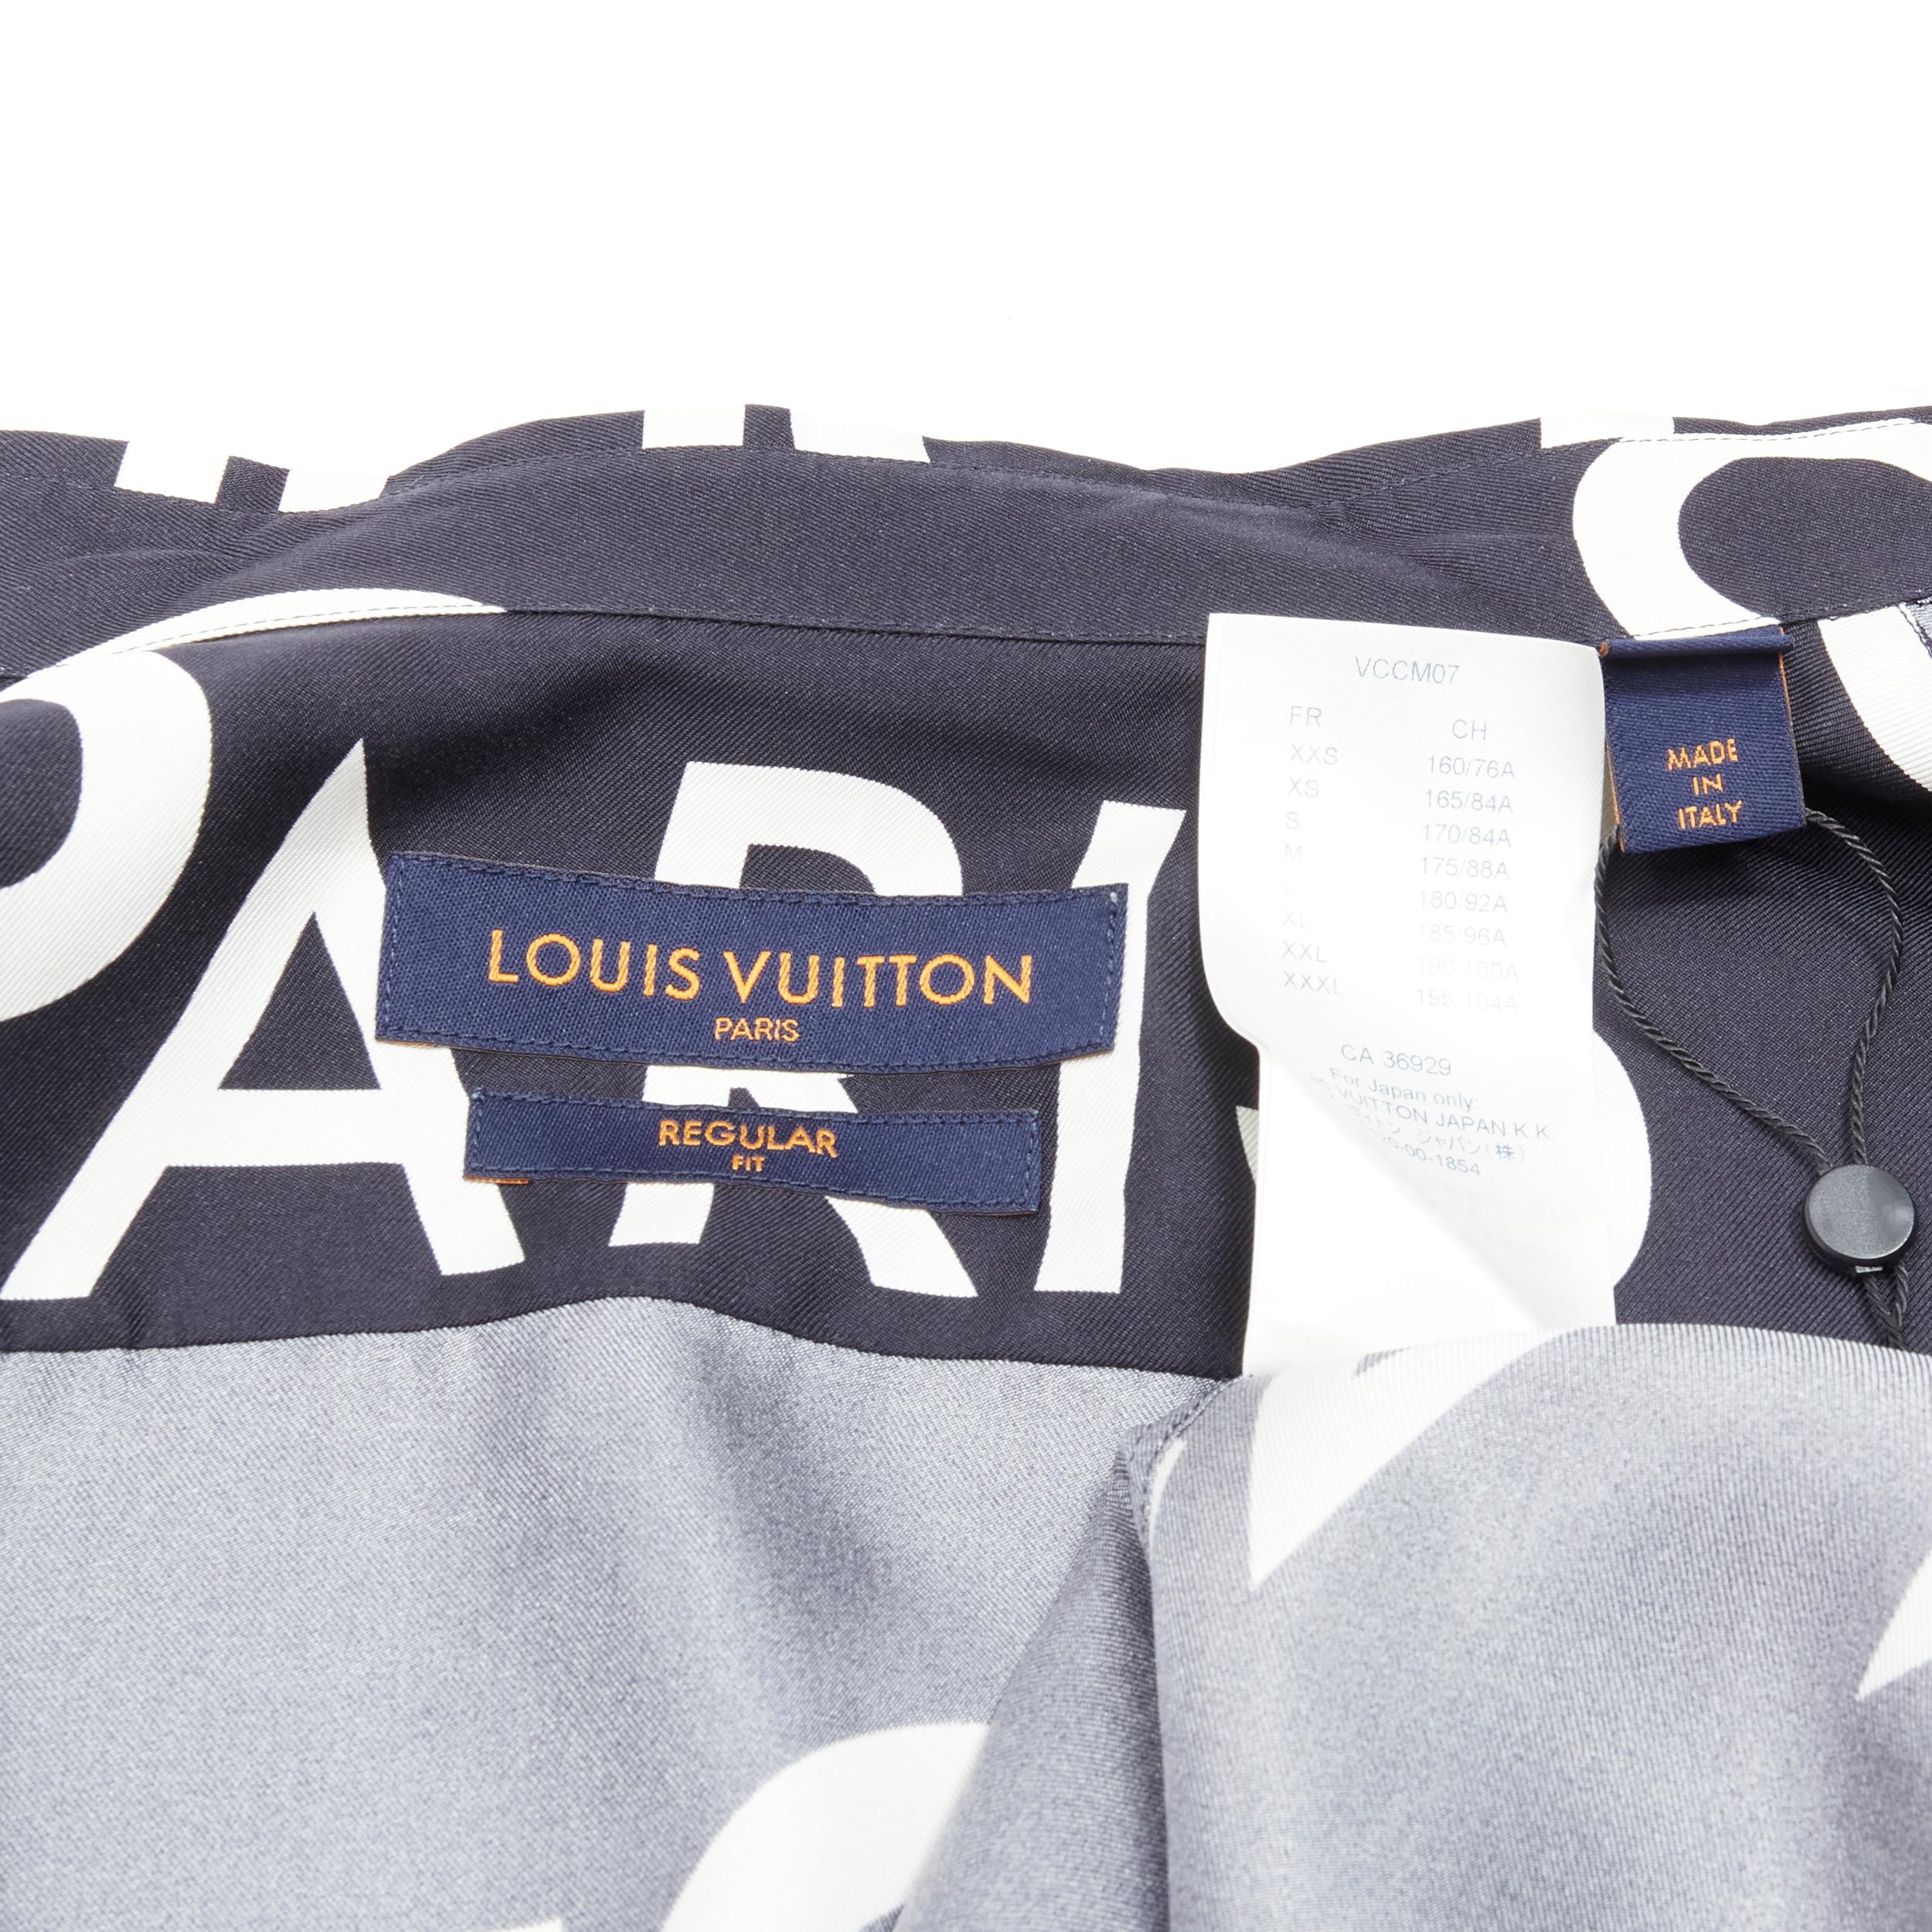 LOUIS VUITTON VIRGIL ABLOH 100% silk navy white typography logo shirt L 2